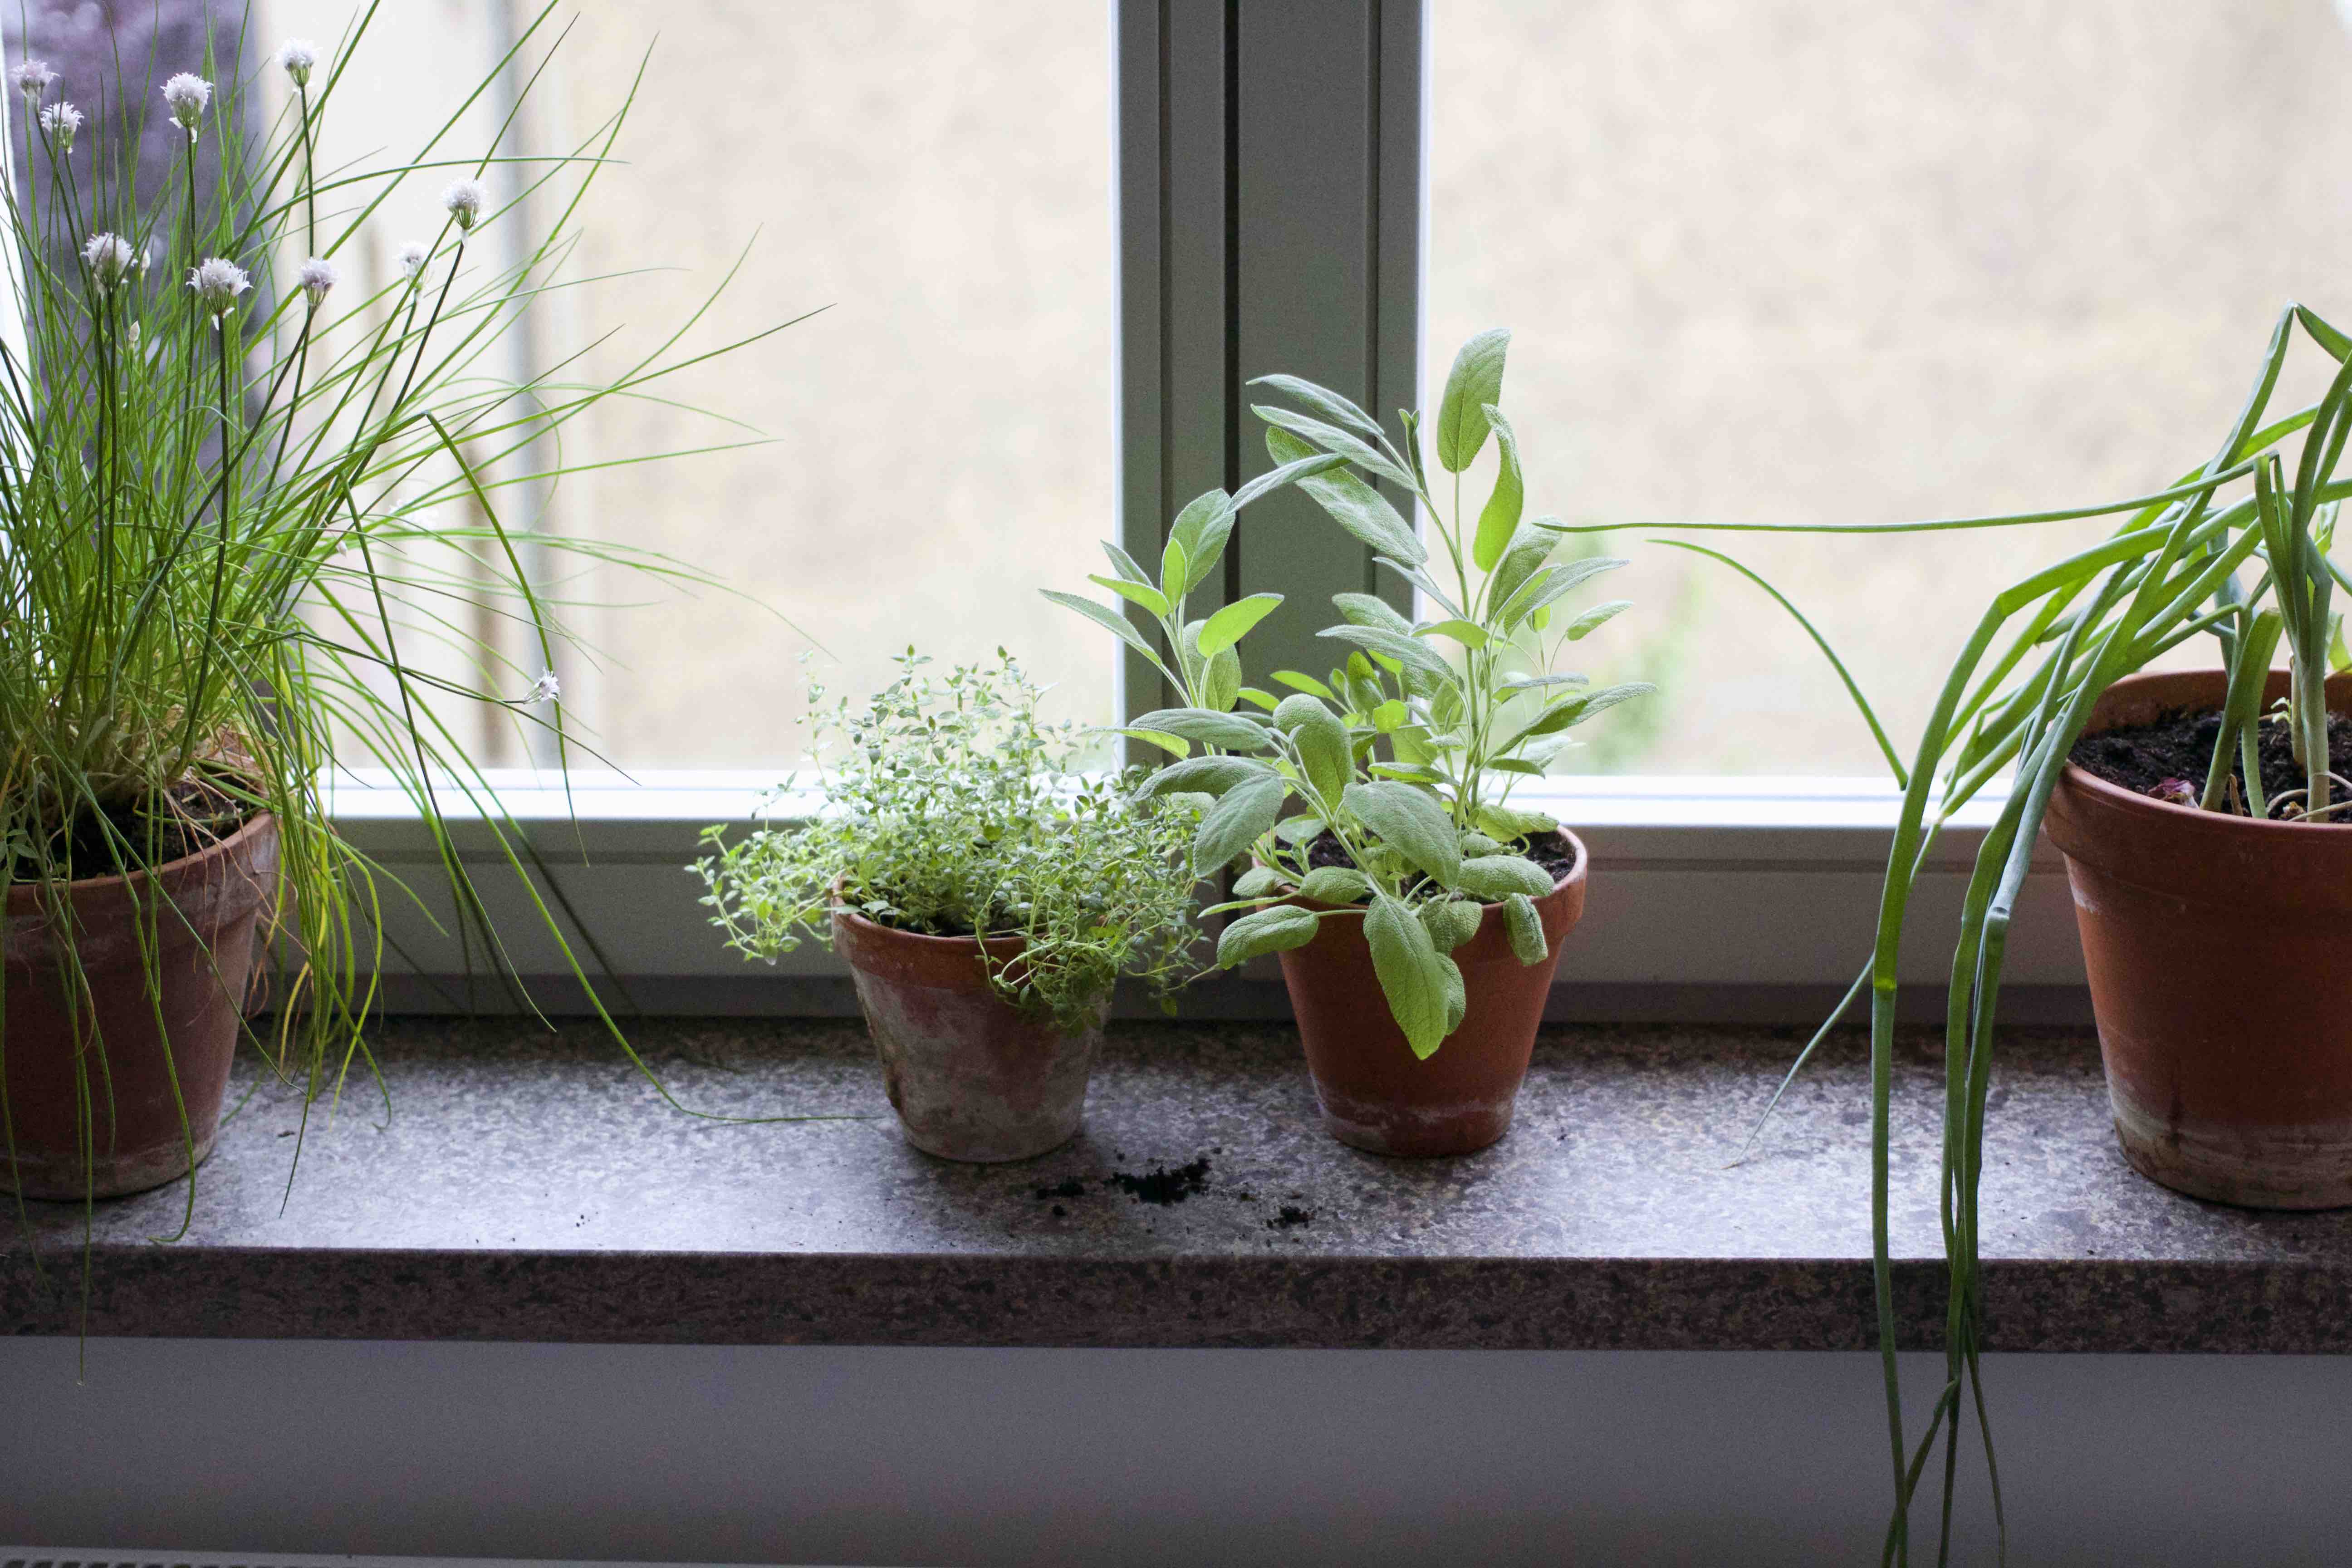 Mein Heimwerker Blog: Meine Fensterbänke